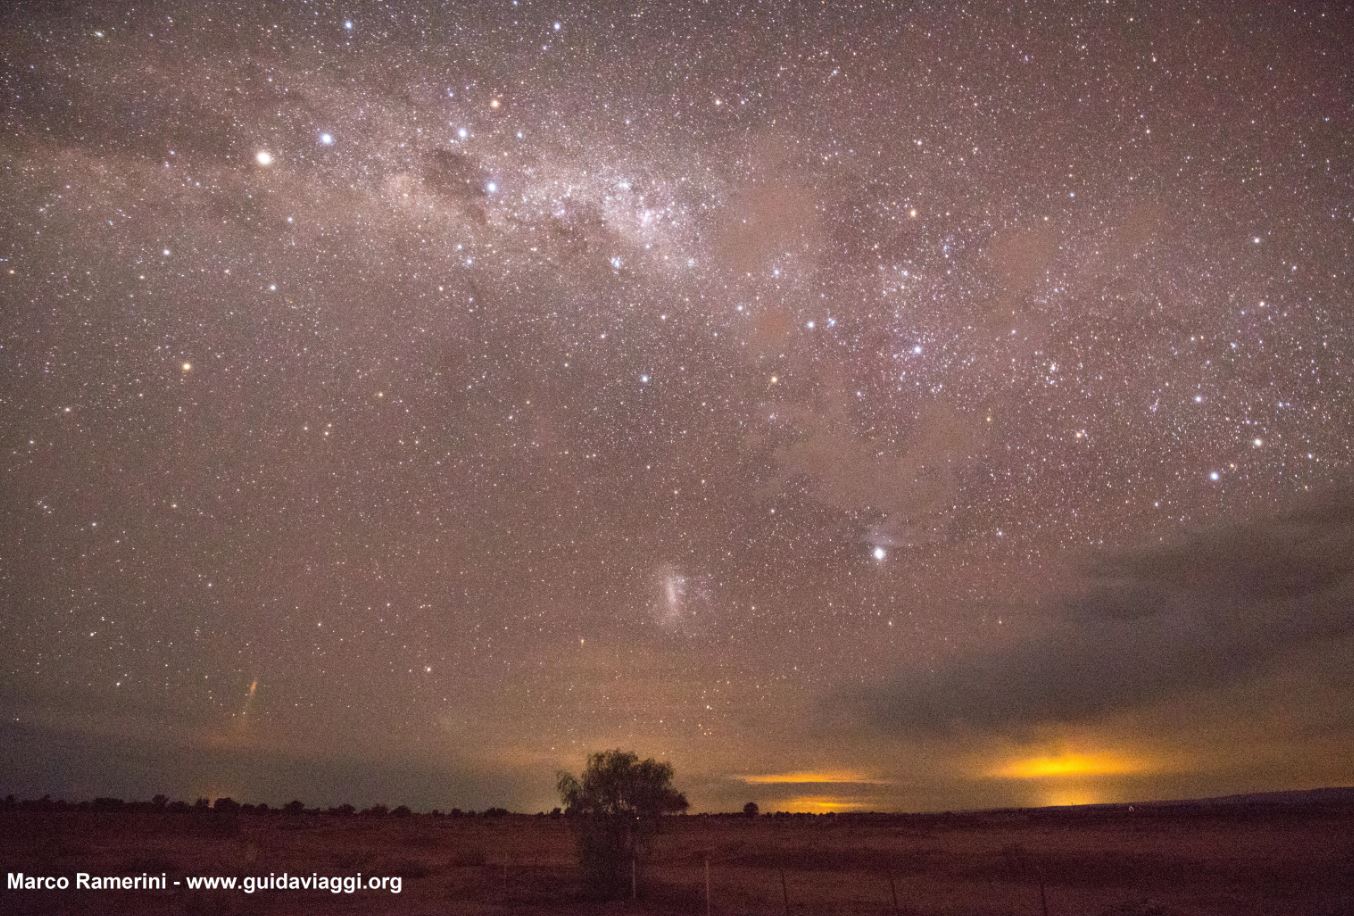 La Vía Láctea, poco después del atardecer, con la Cruz del Sur, Eta Carinae y la Gran Nube de Magallanes. Desierto de Atacama, Chile. Autor y Copyright Marco Ramerini.